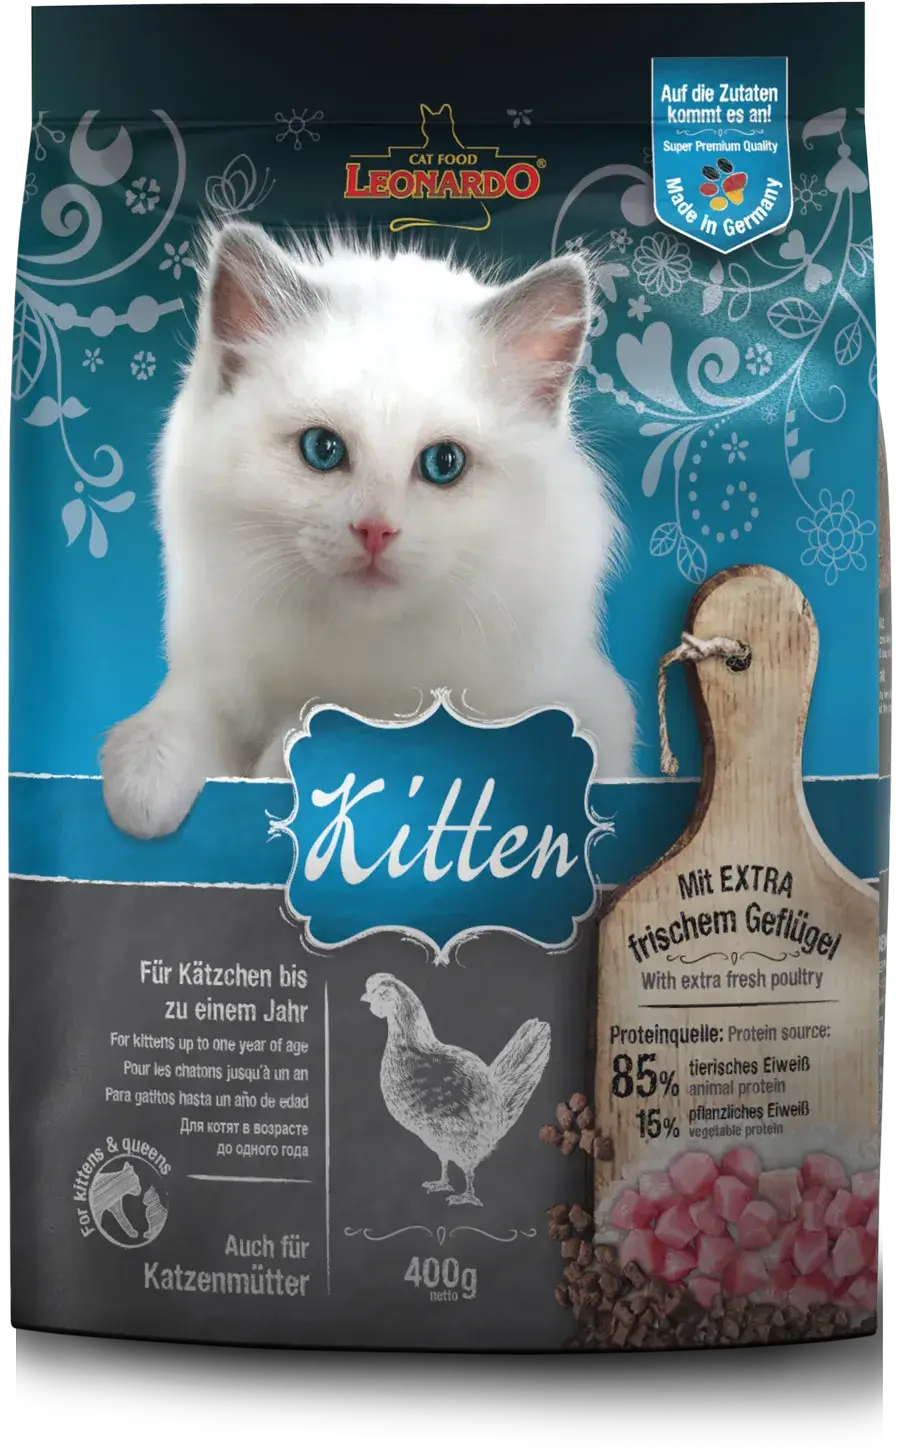 LEONARDO Kitten | Pienso para gatos en Gabo&Gordo Pet Shop en Las Palmas de Gran Canaria tienda para mascotas, perros, gatos, conejos, tortugas, animales, accesorios para mascotas